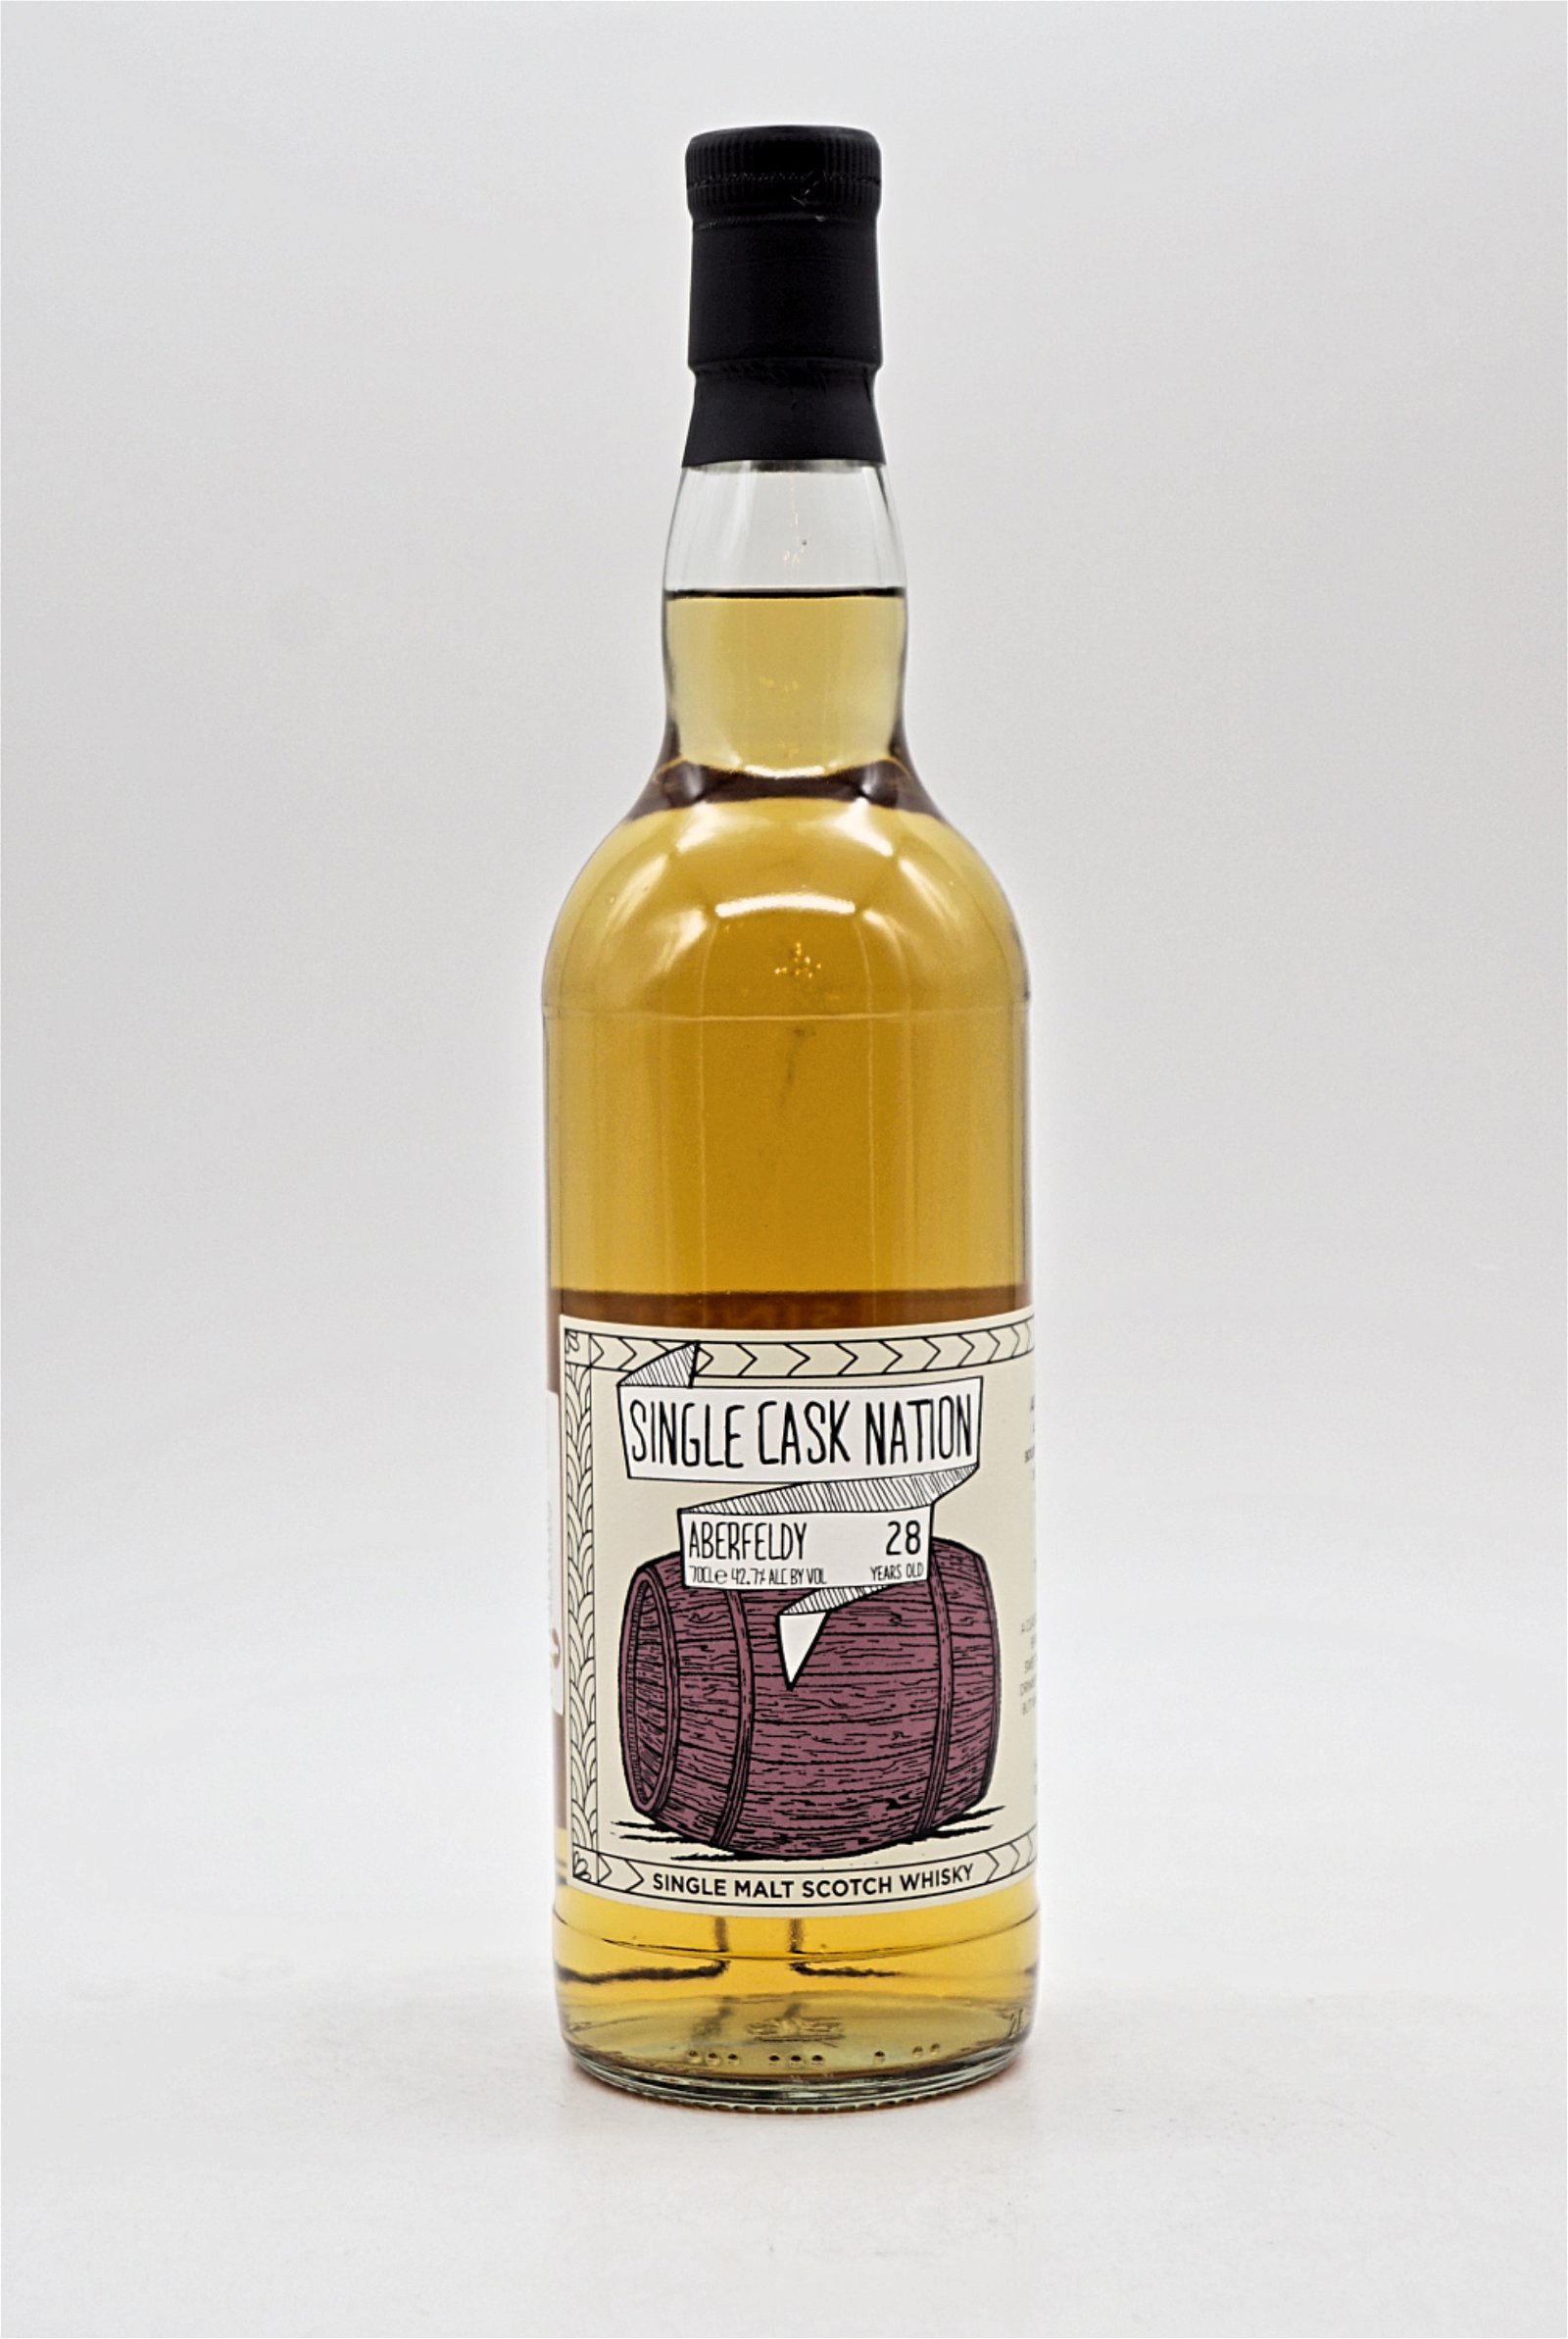 Single Cask Nation 28 Jahre Aberfeldy Cask #7435 Single Malt Scotch Whisky